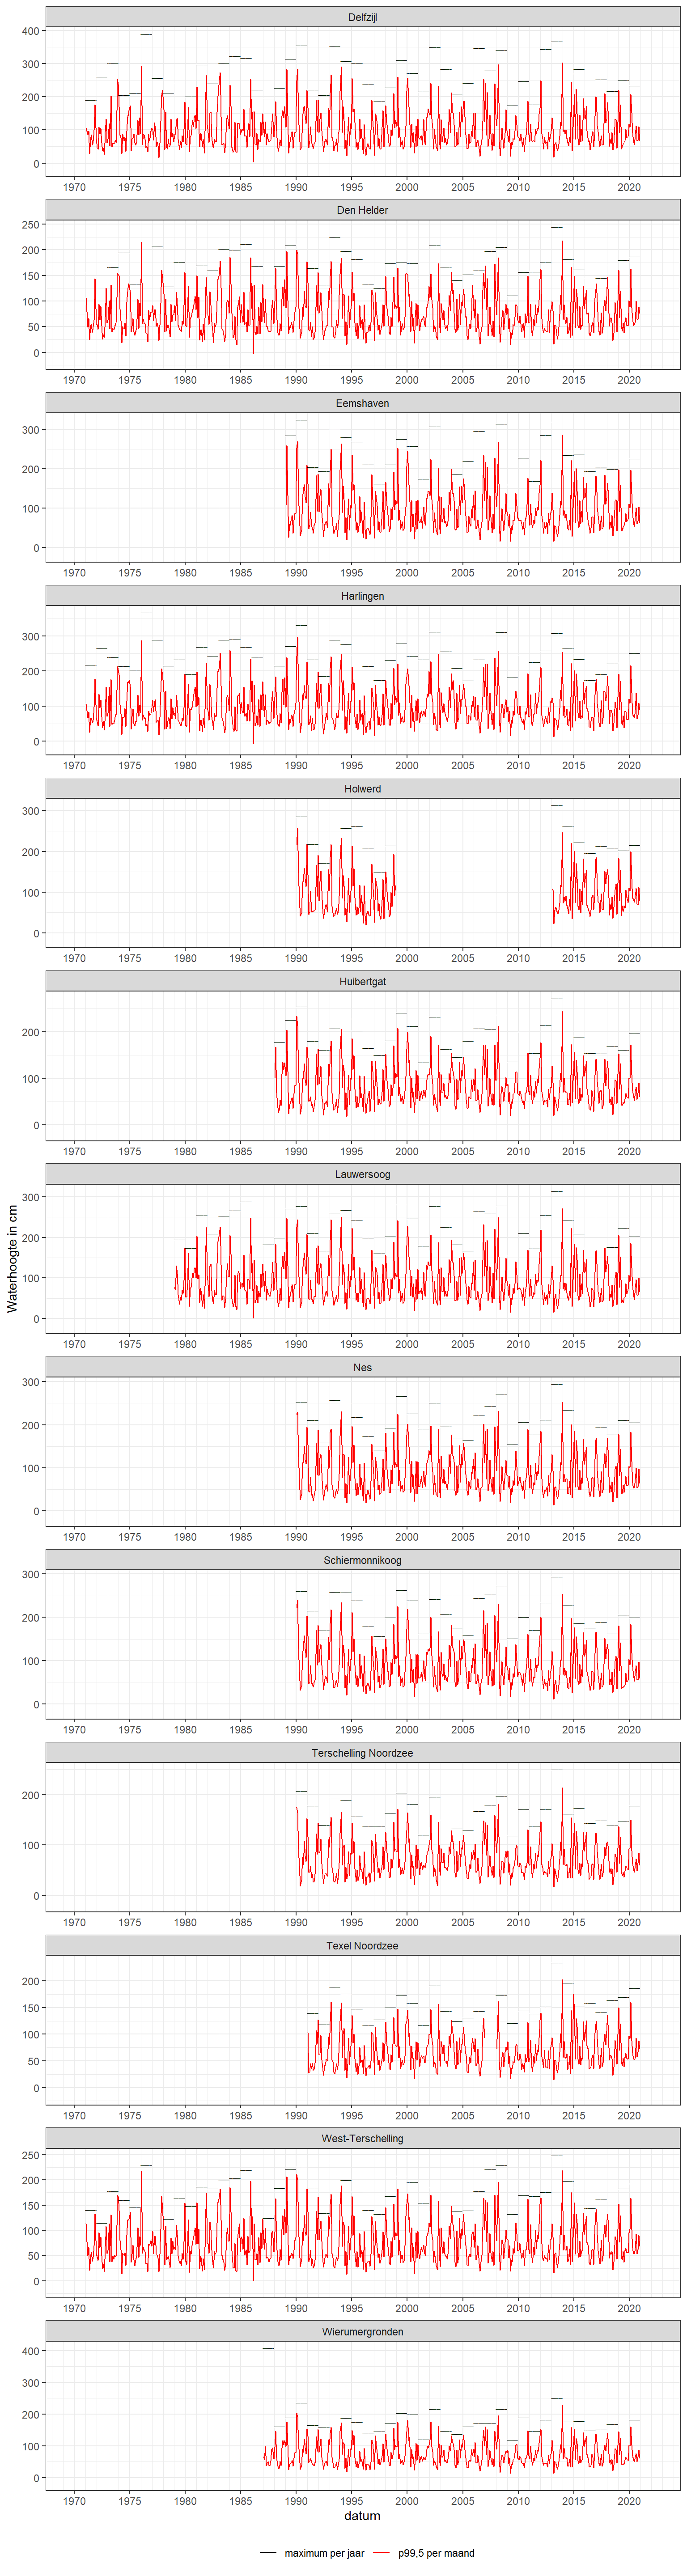 Maandelijks 99,5-percentiel voor opzet = gemeten waterstand - astronomische waterstand (rode lijn) en het jaarlijks maximum van de opzet (grijs streepje).